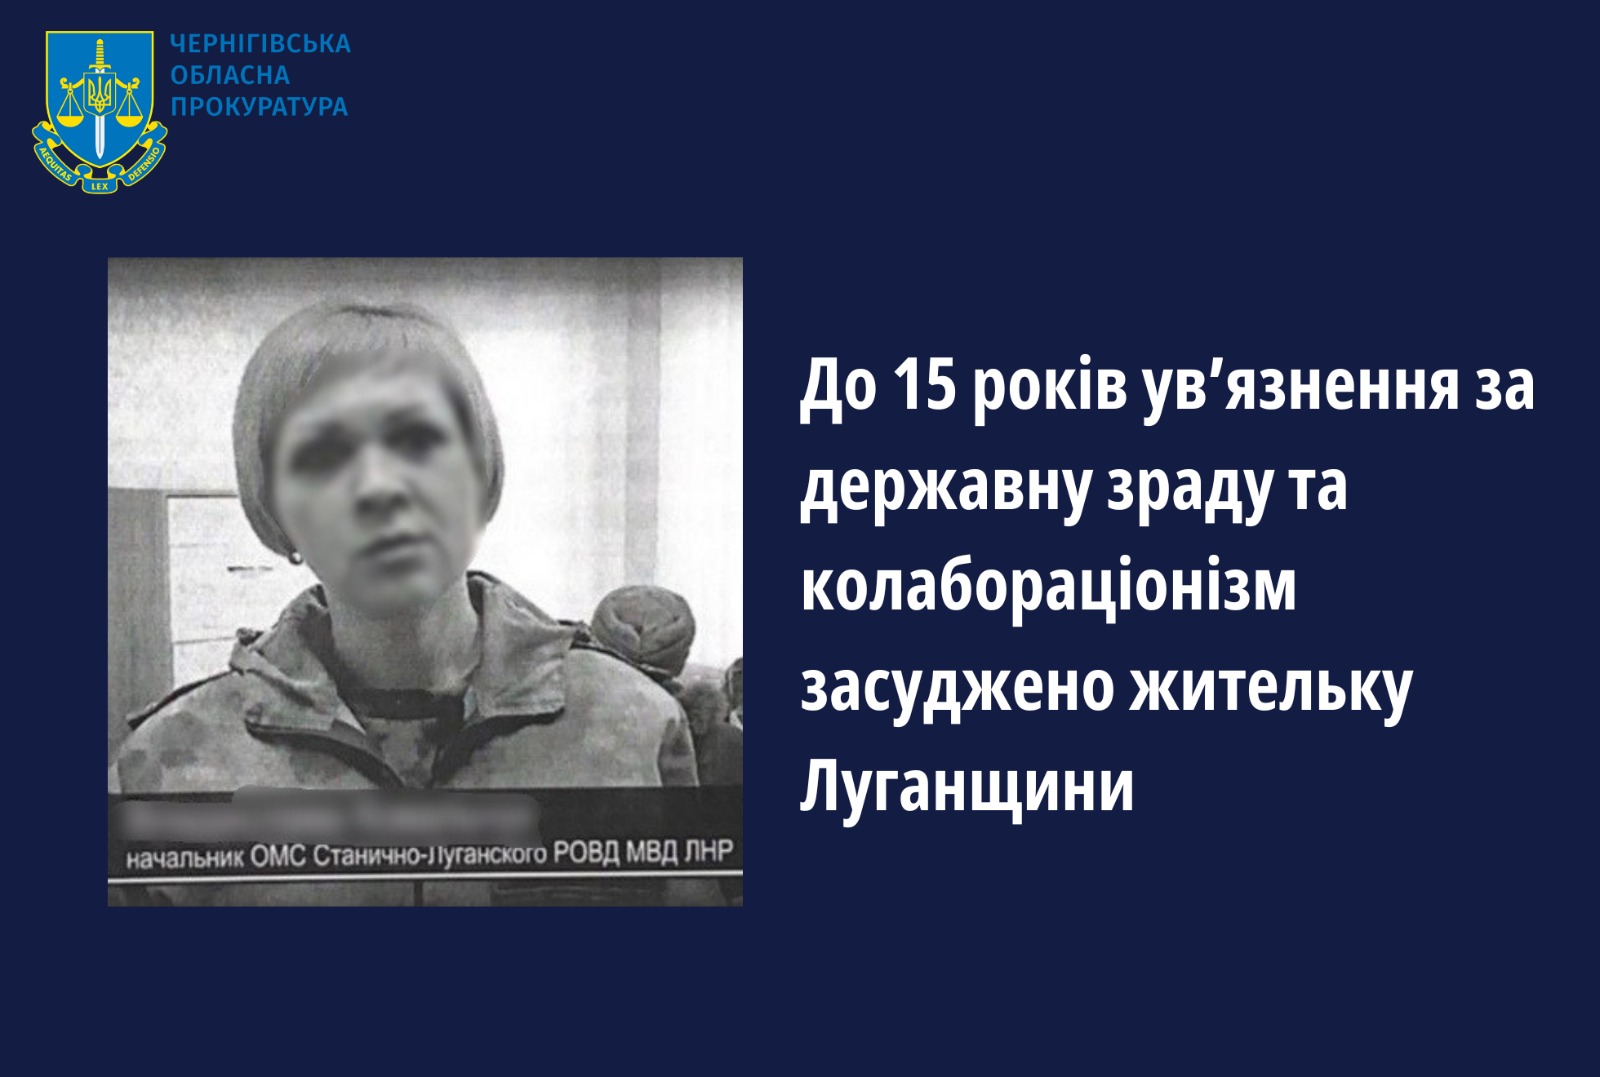 До 15 років ув’язнення за державну зраду засуджено жительку Луганщини